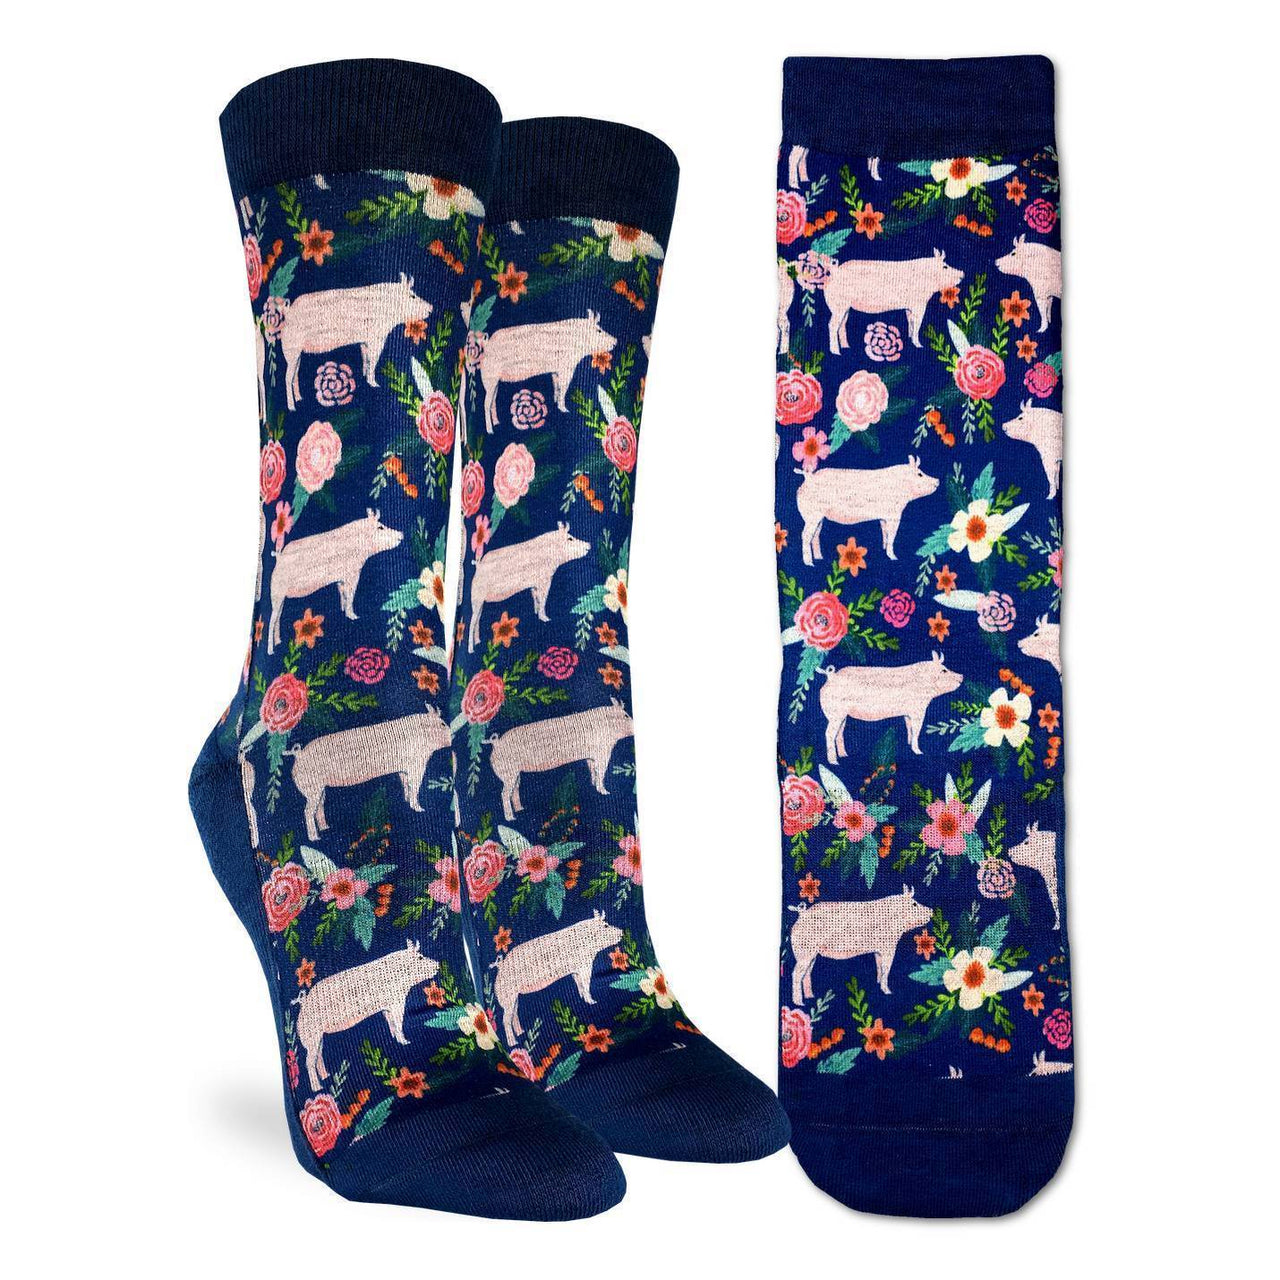 Ladies' Socks - Floral Pigs